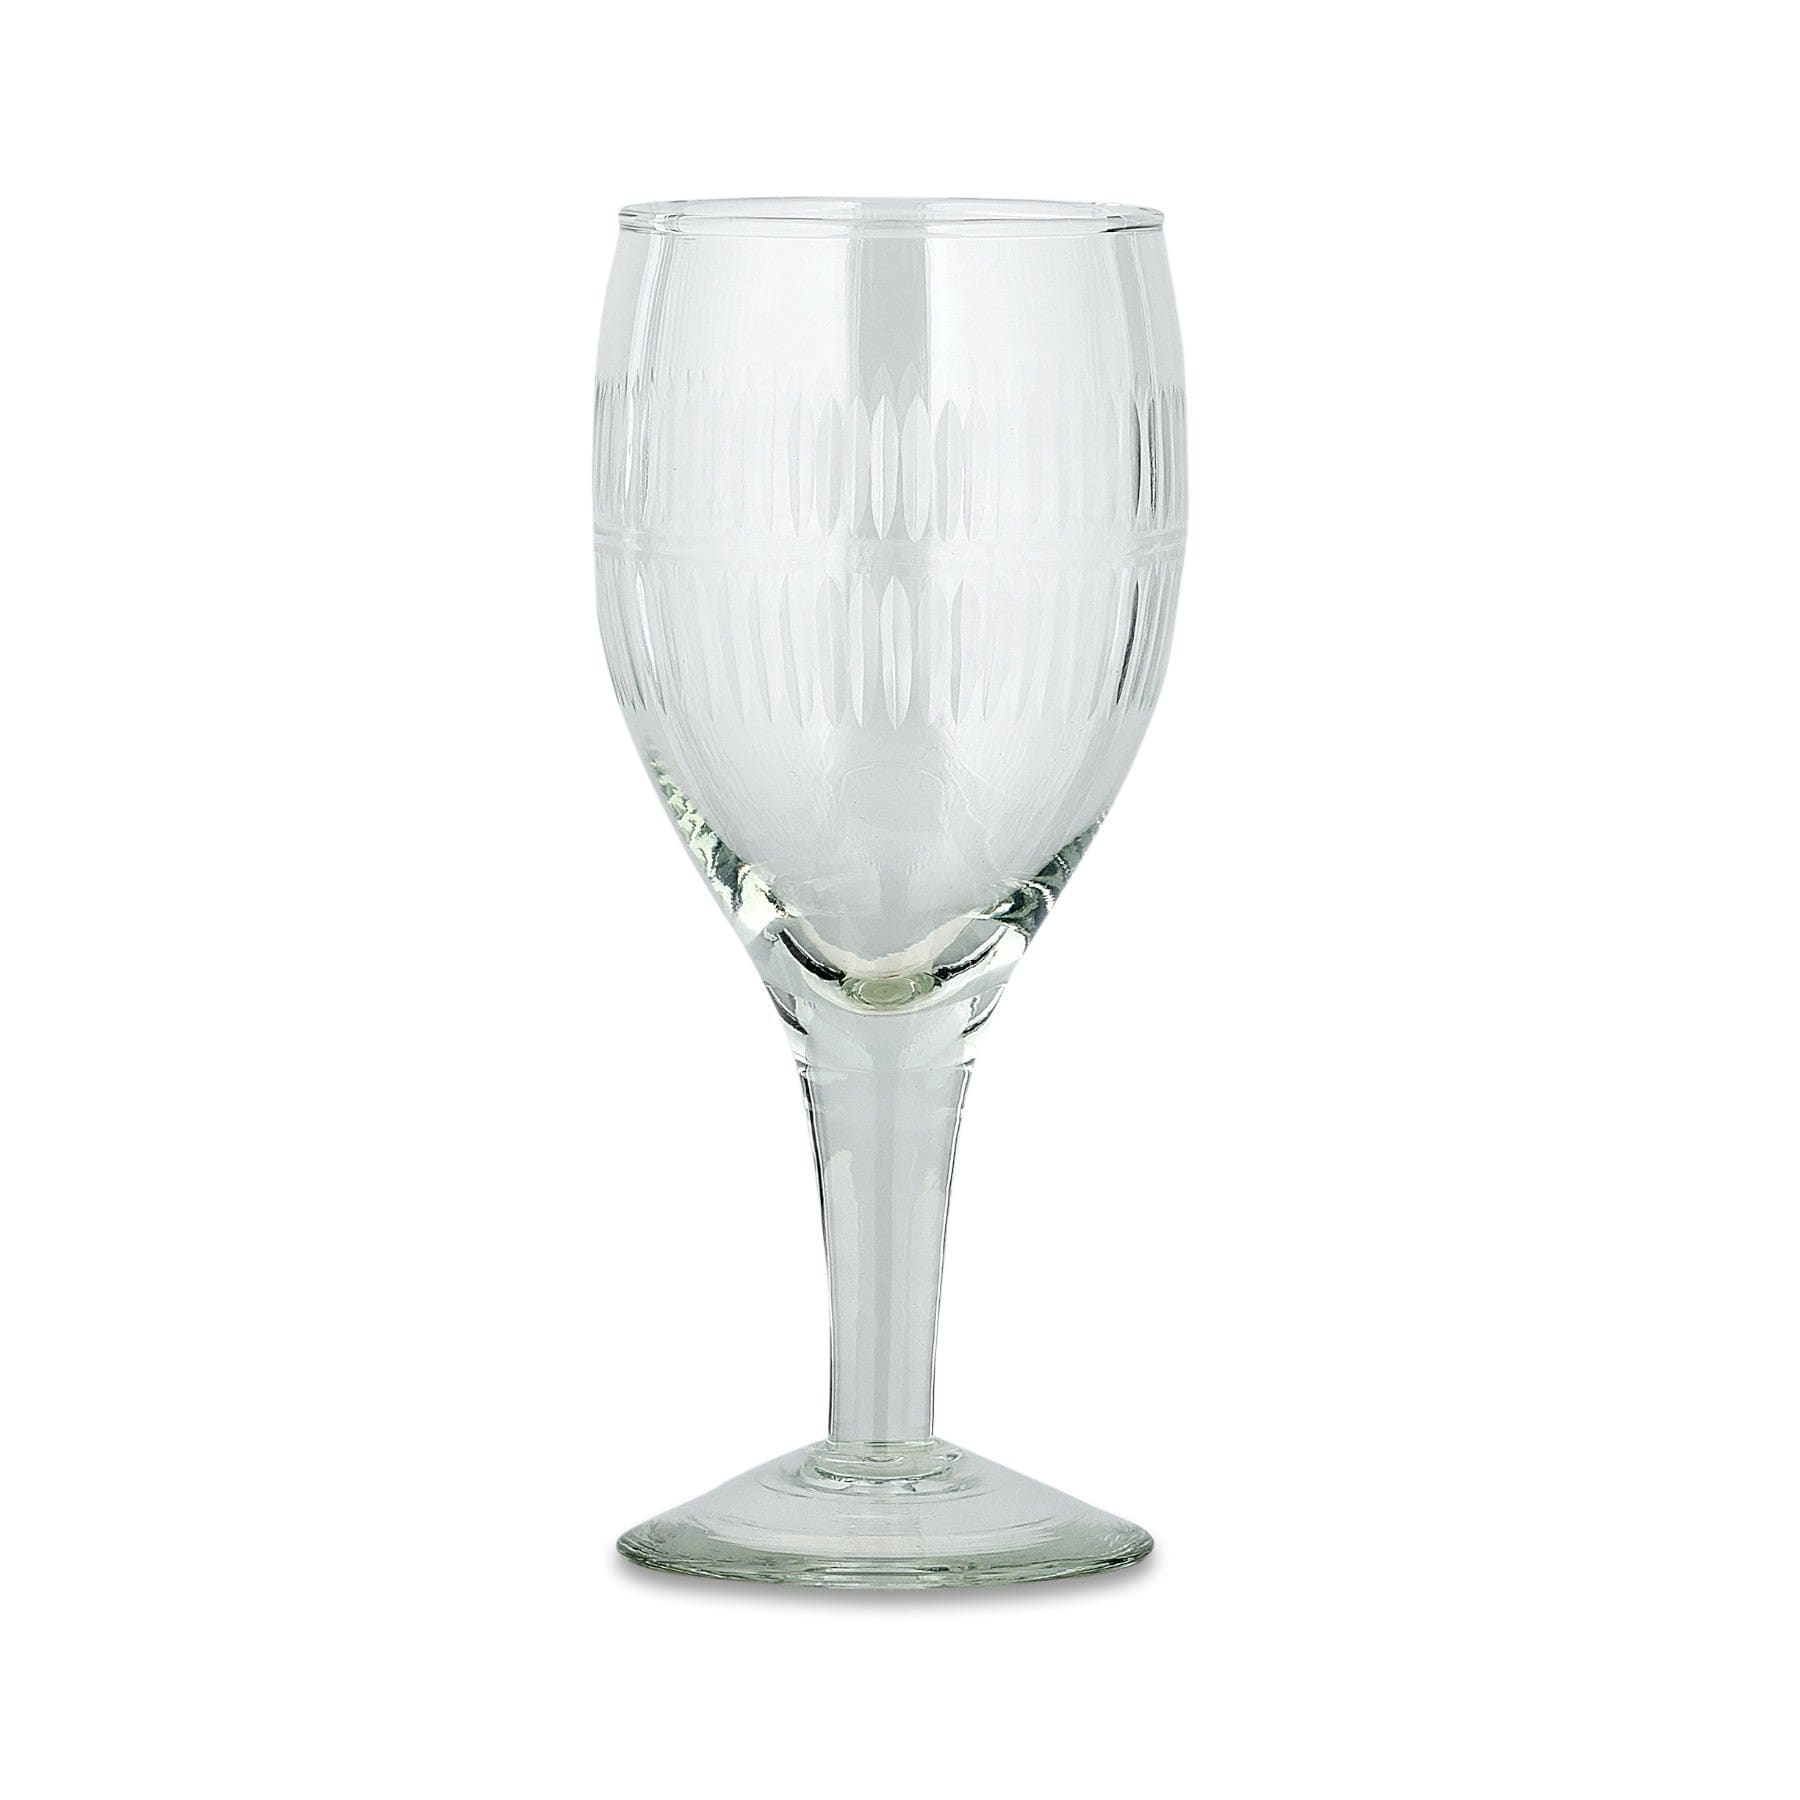 Mila wine glass